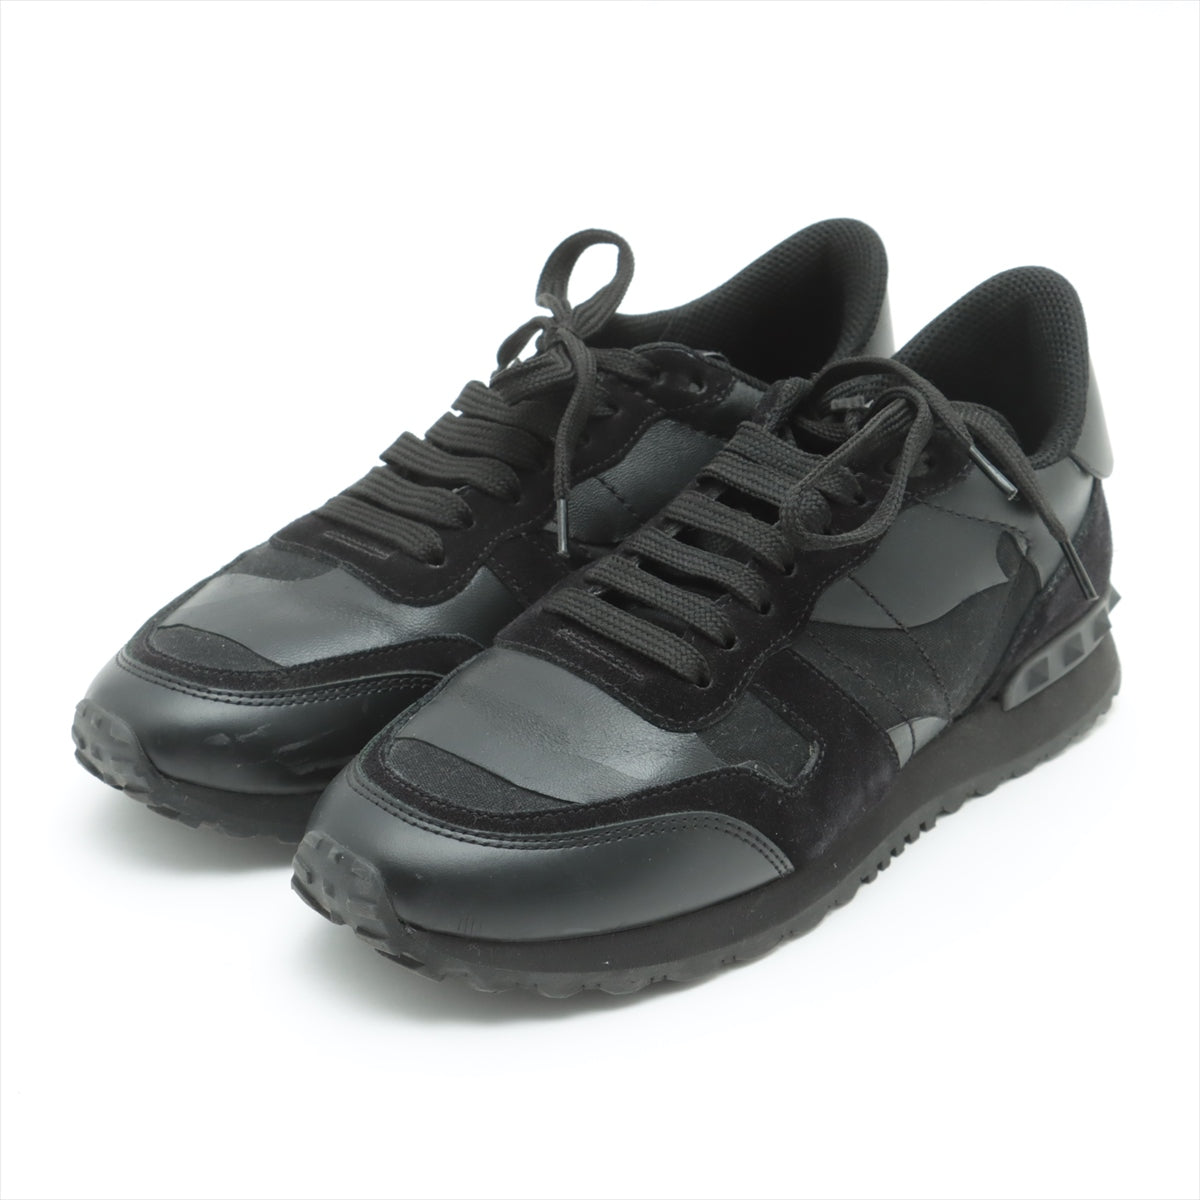 Valentino Garavani Leather & Suede Sneakers 37 Ladies' Black TU291W2 Rock Studs